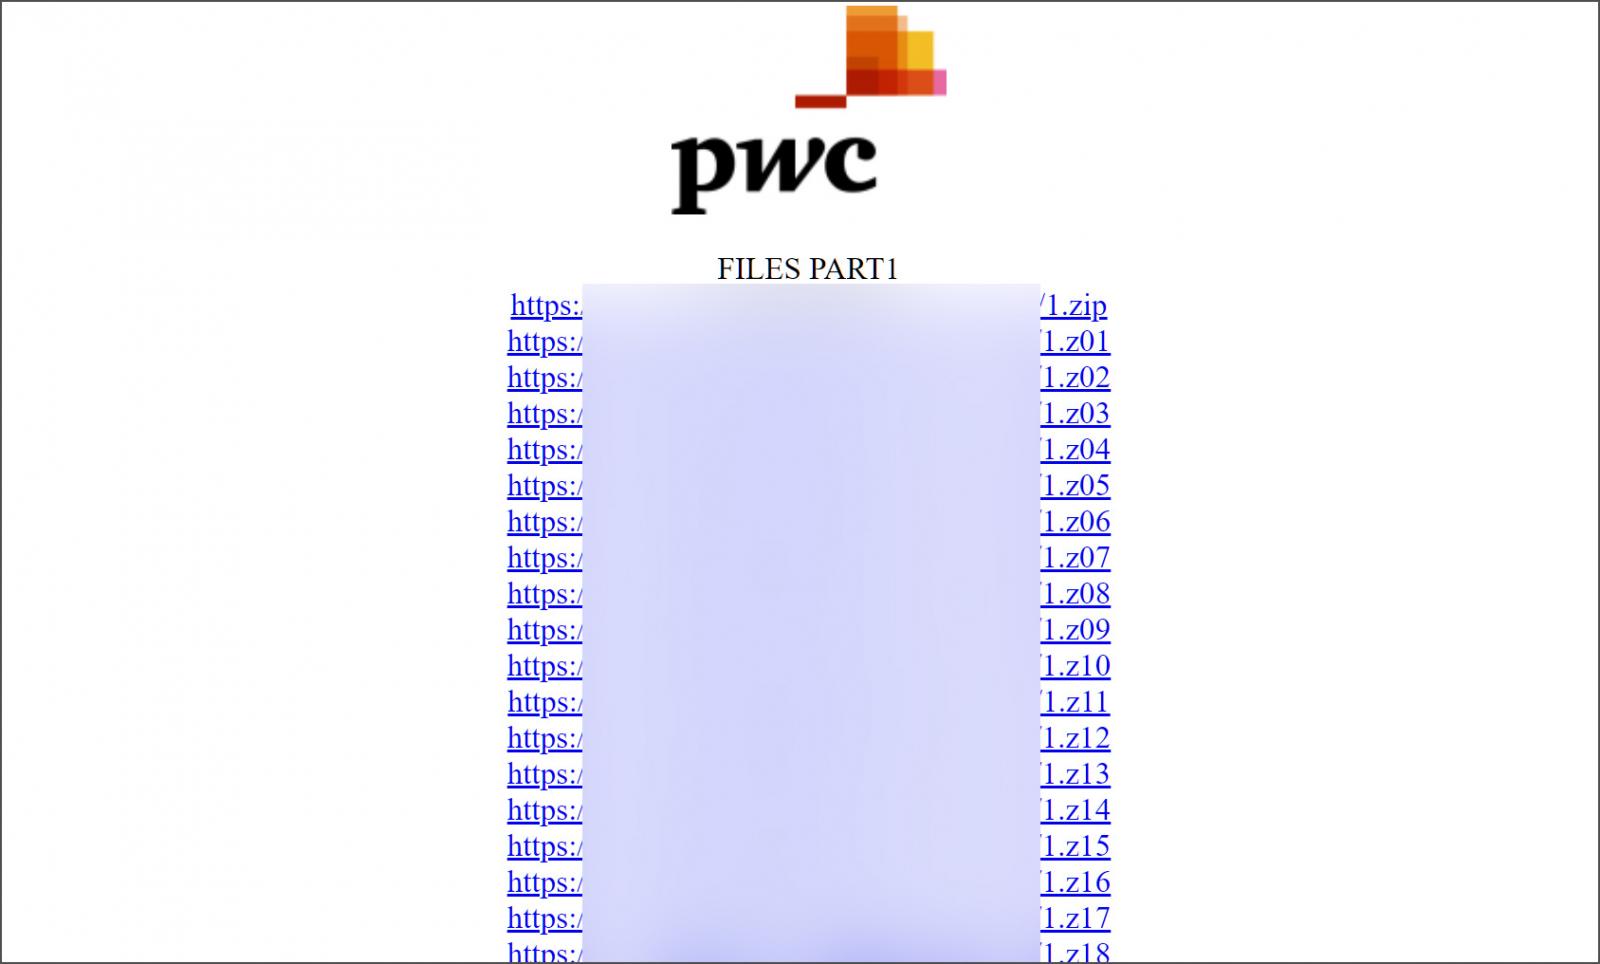 Situs Clearweb dibuat untuk membocorkan data PWC